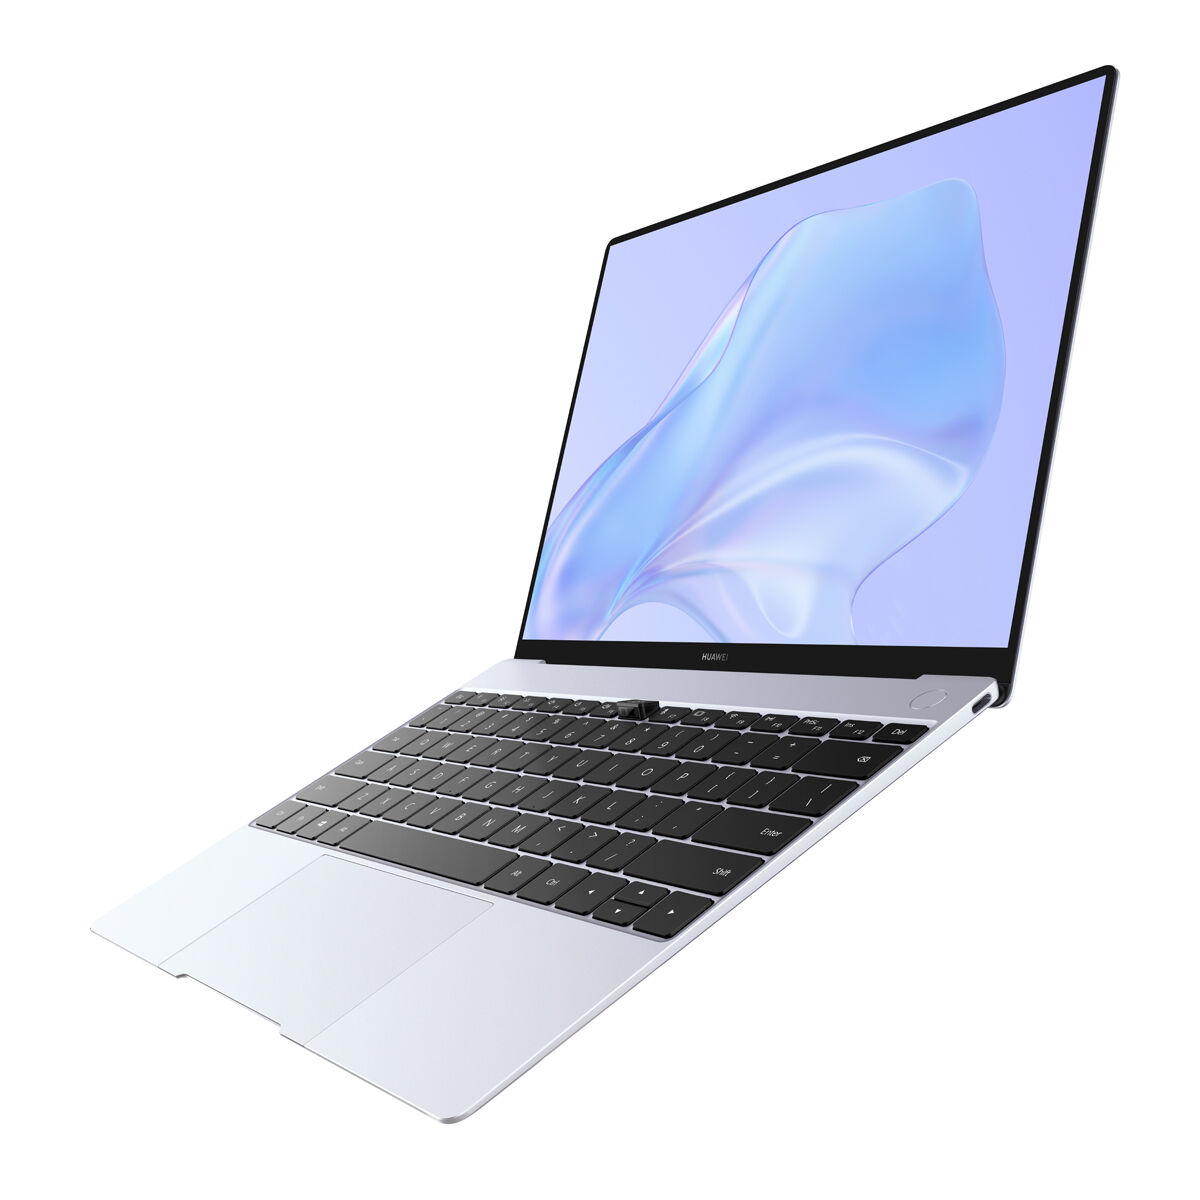 Huawei MateBook X Series - Notebookcheck.net External Reviews